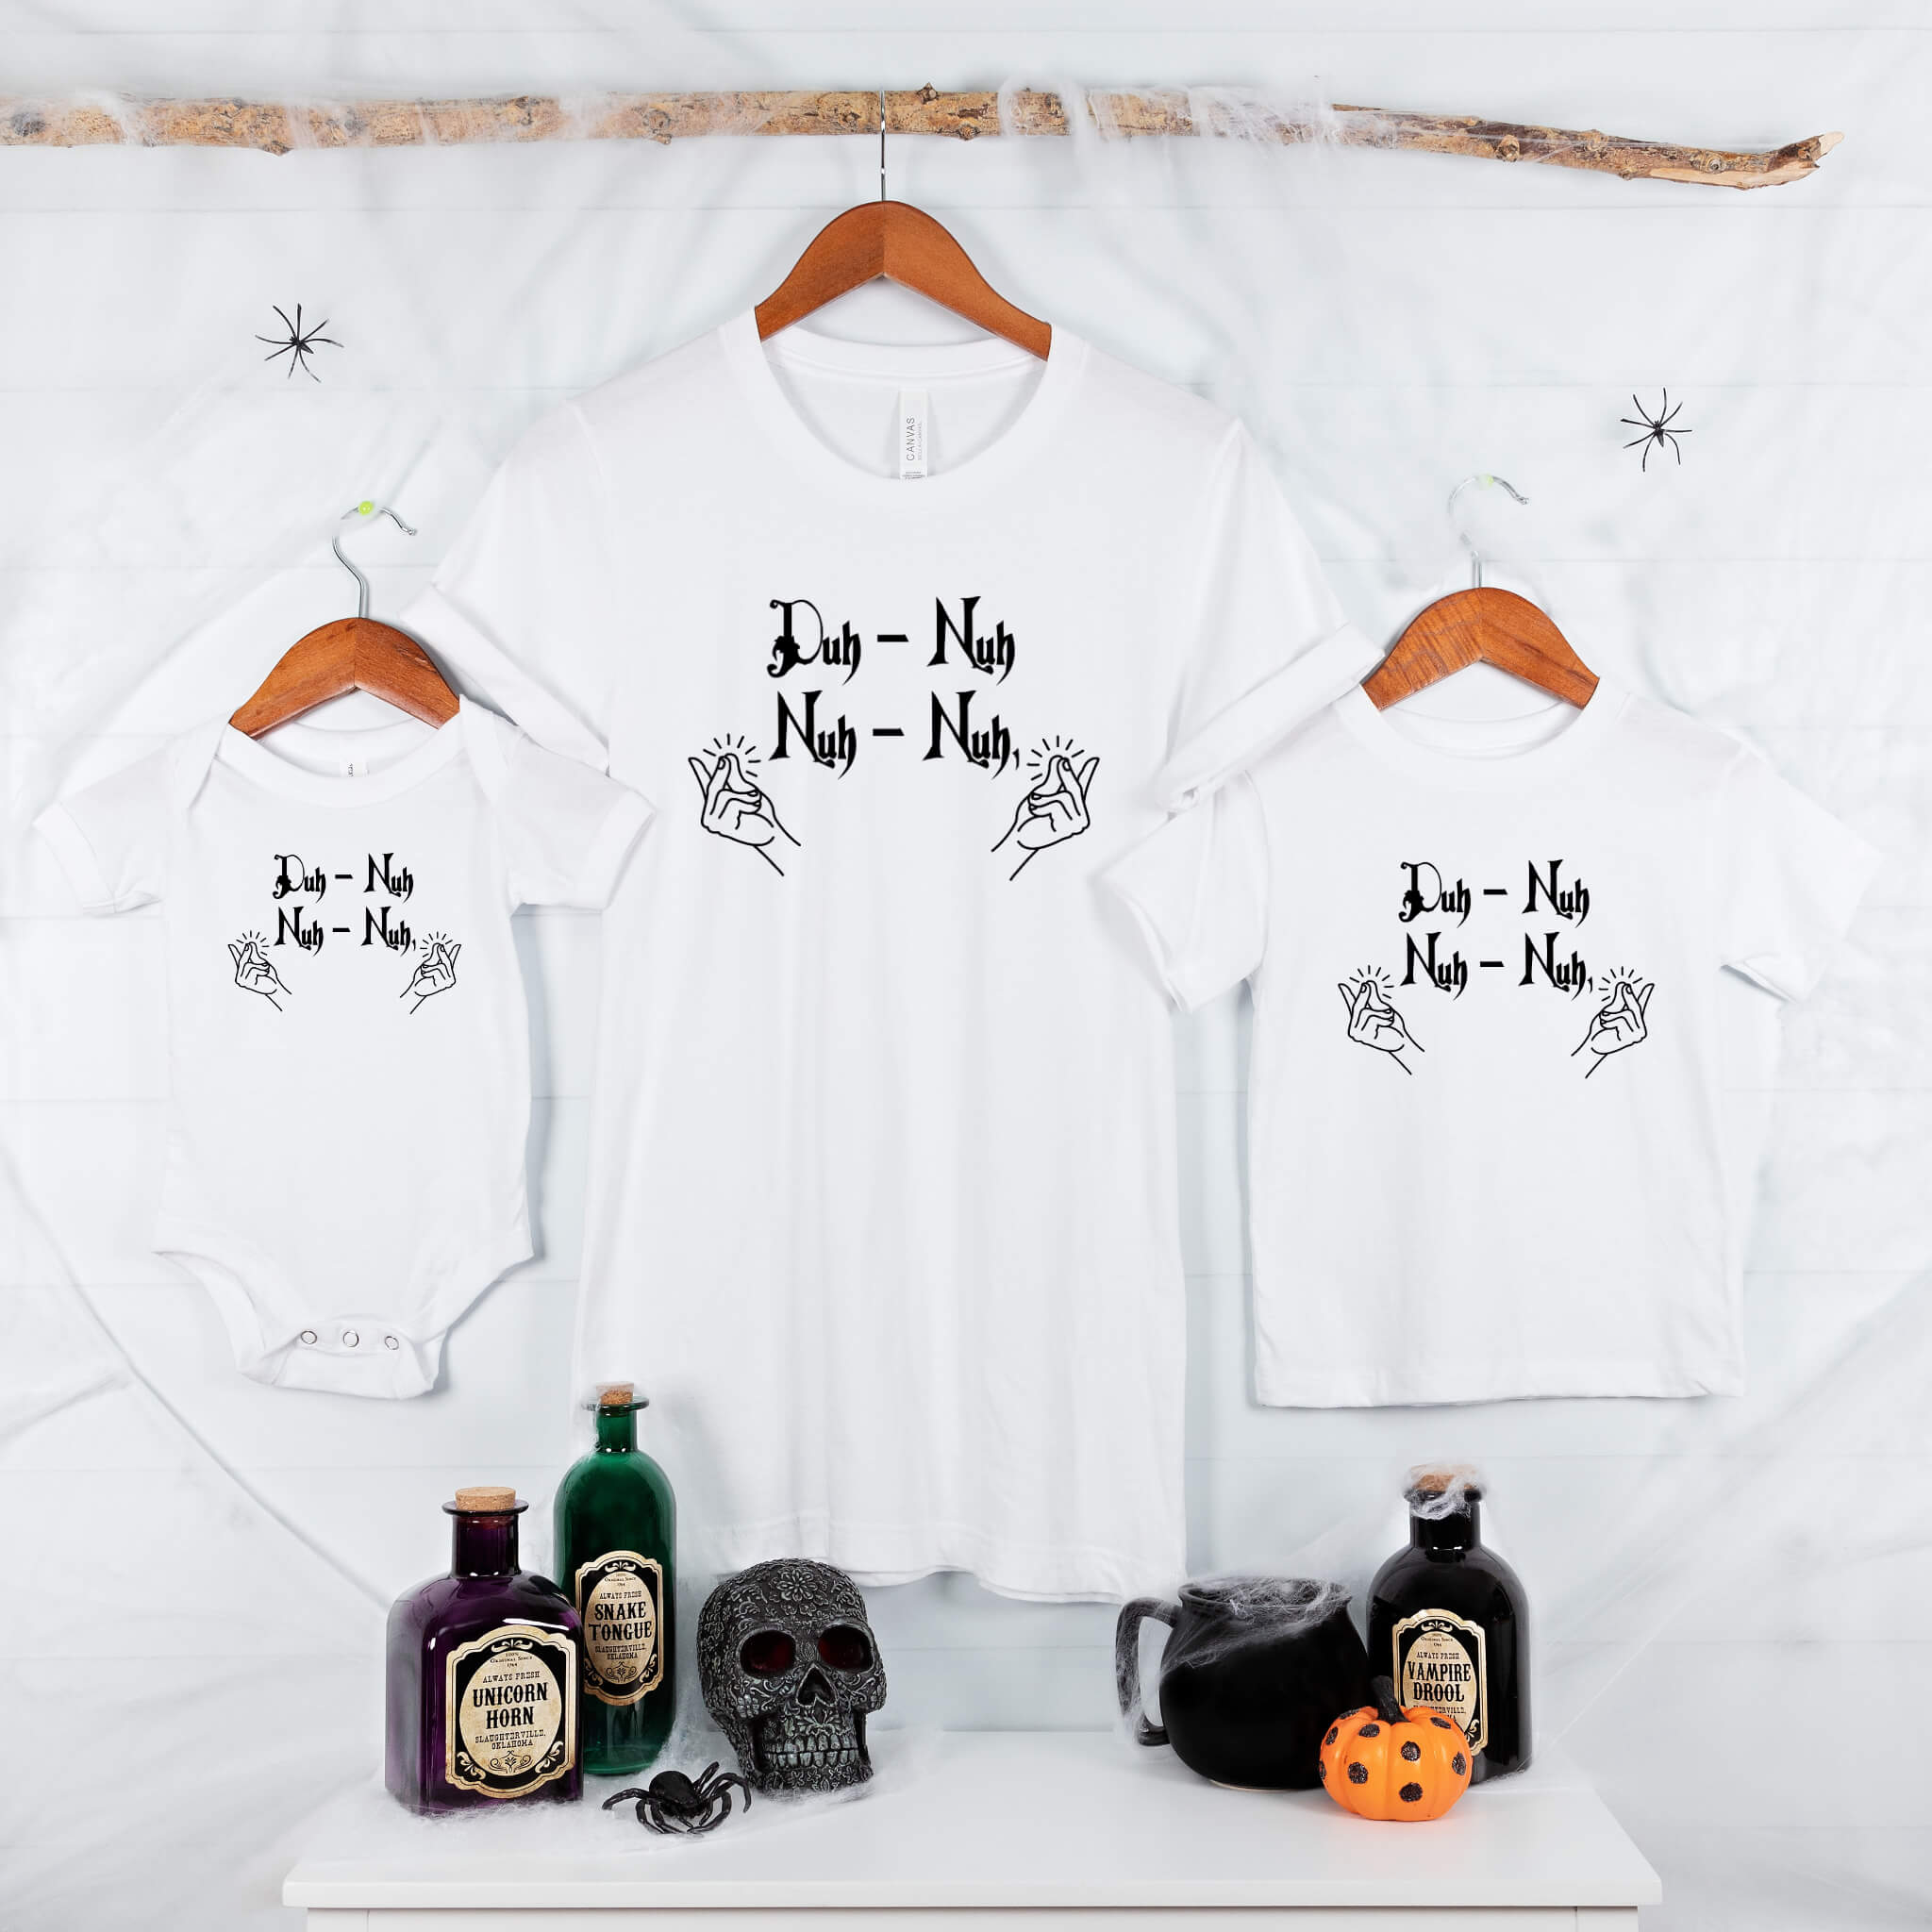 Halloween Addams Family Duh-Nuh Nuh-Nuh Graphic Print T-Shirt